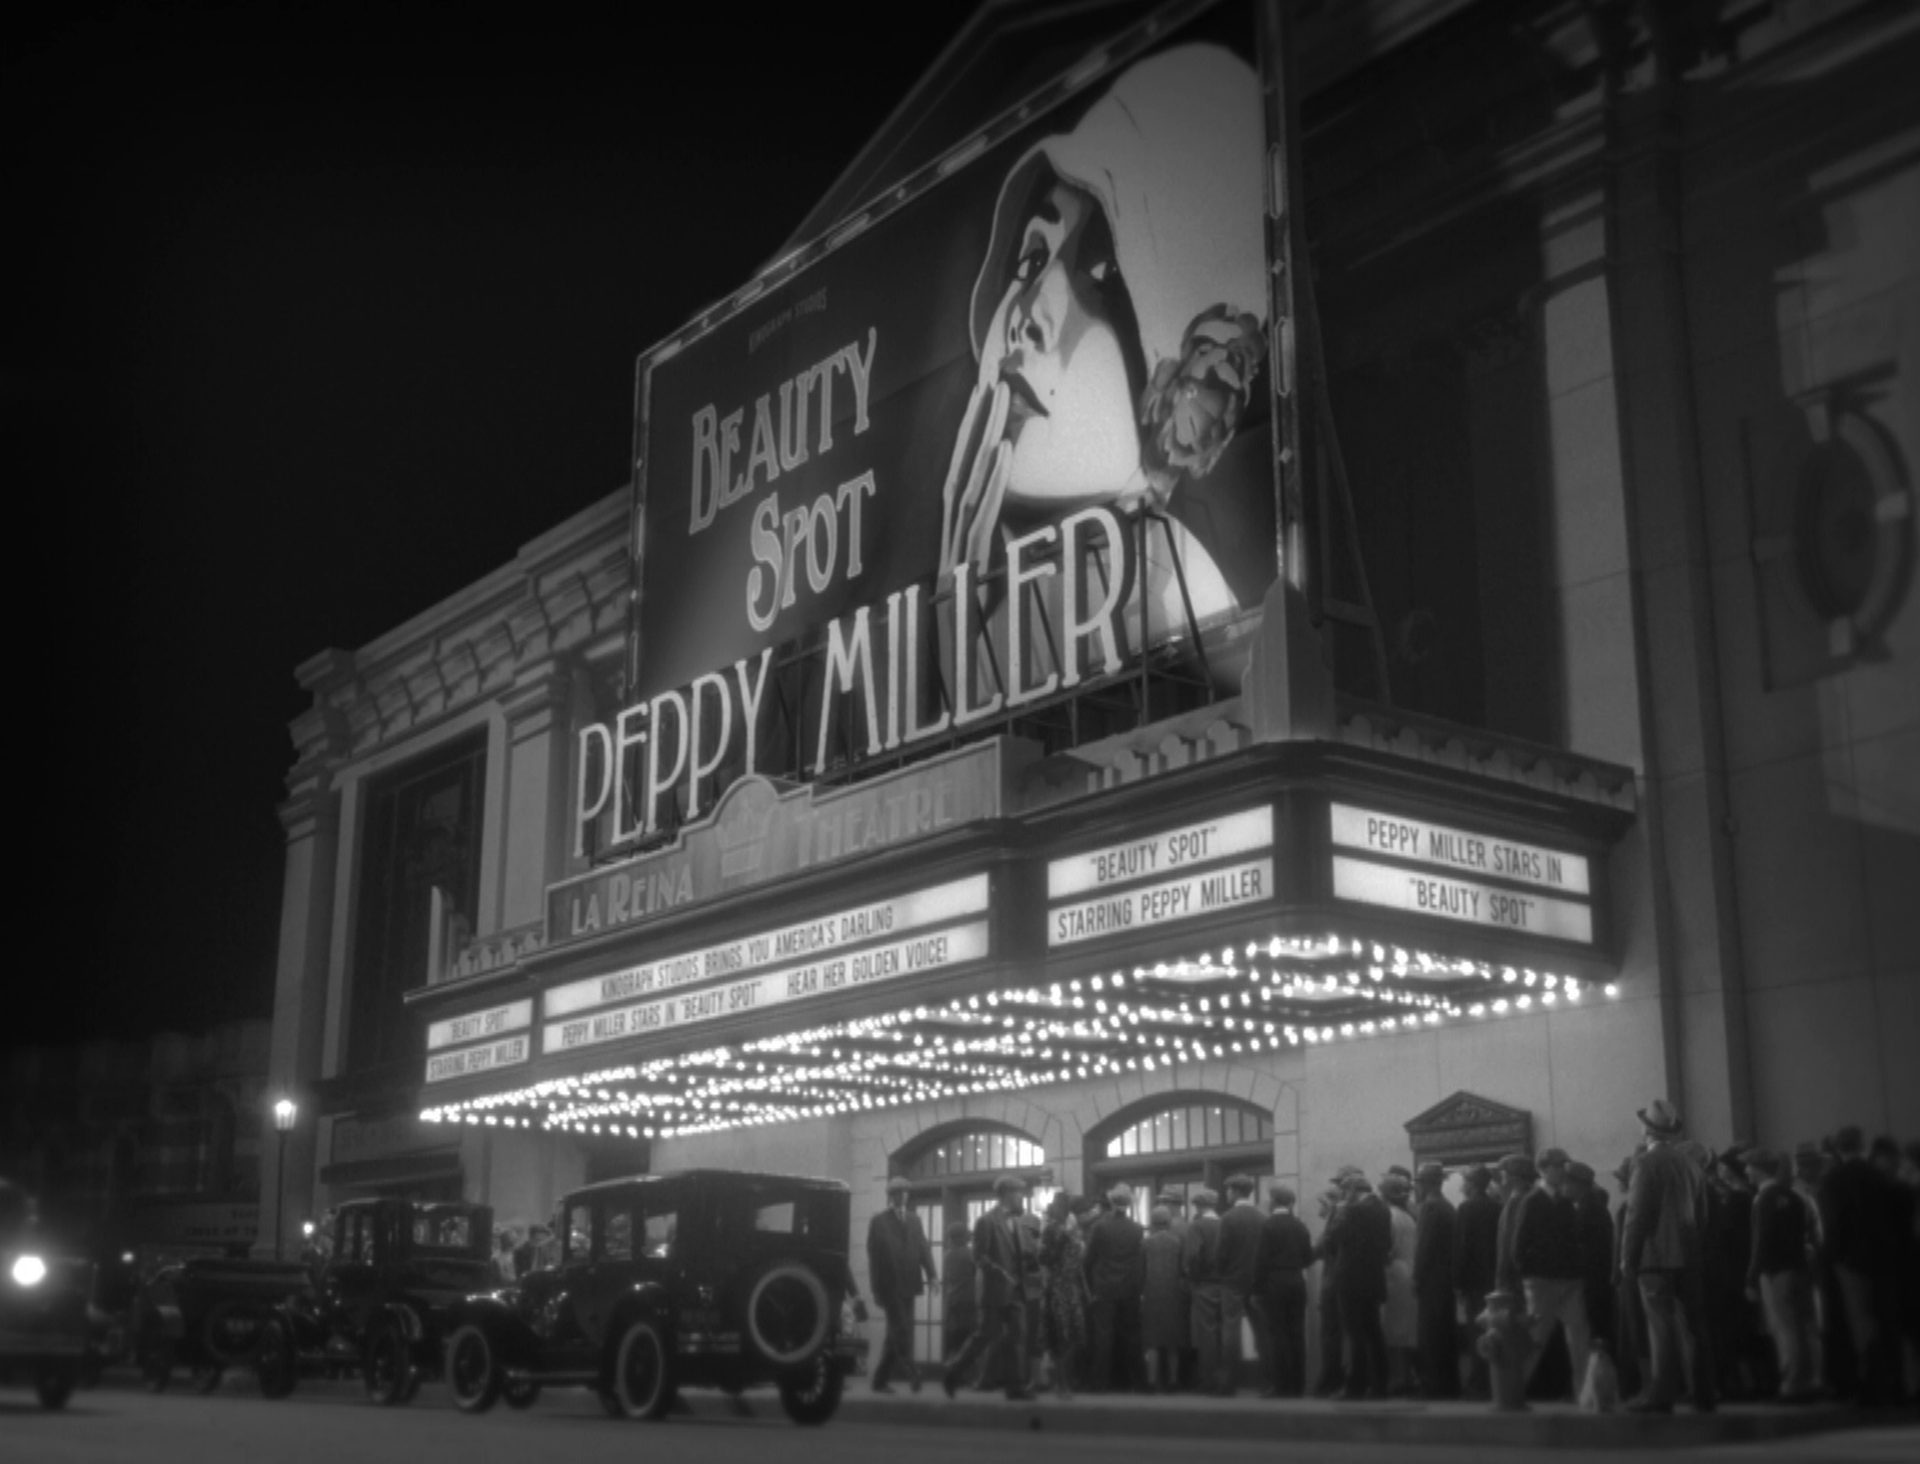 Warteschlange am Eingangsbereich eines großen Kinos mit der Filmpremiere des neuen Peppy-Miller-Streifens Beauty Spot